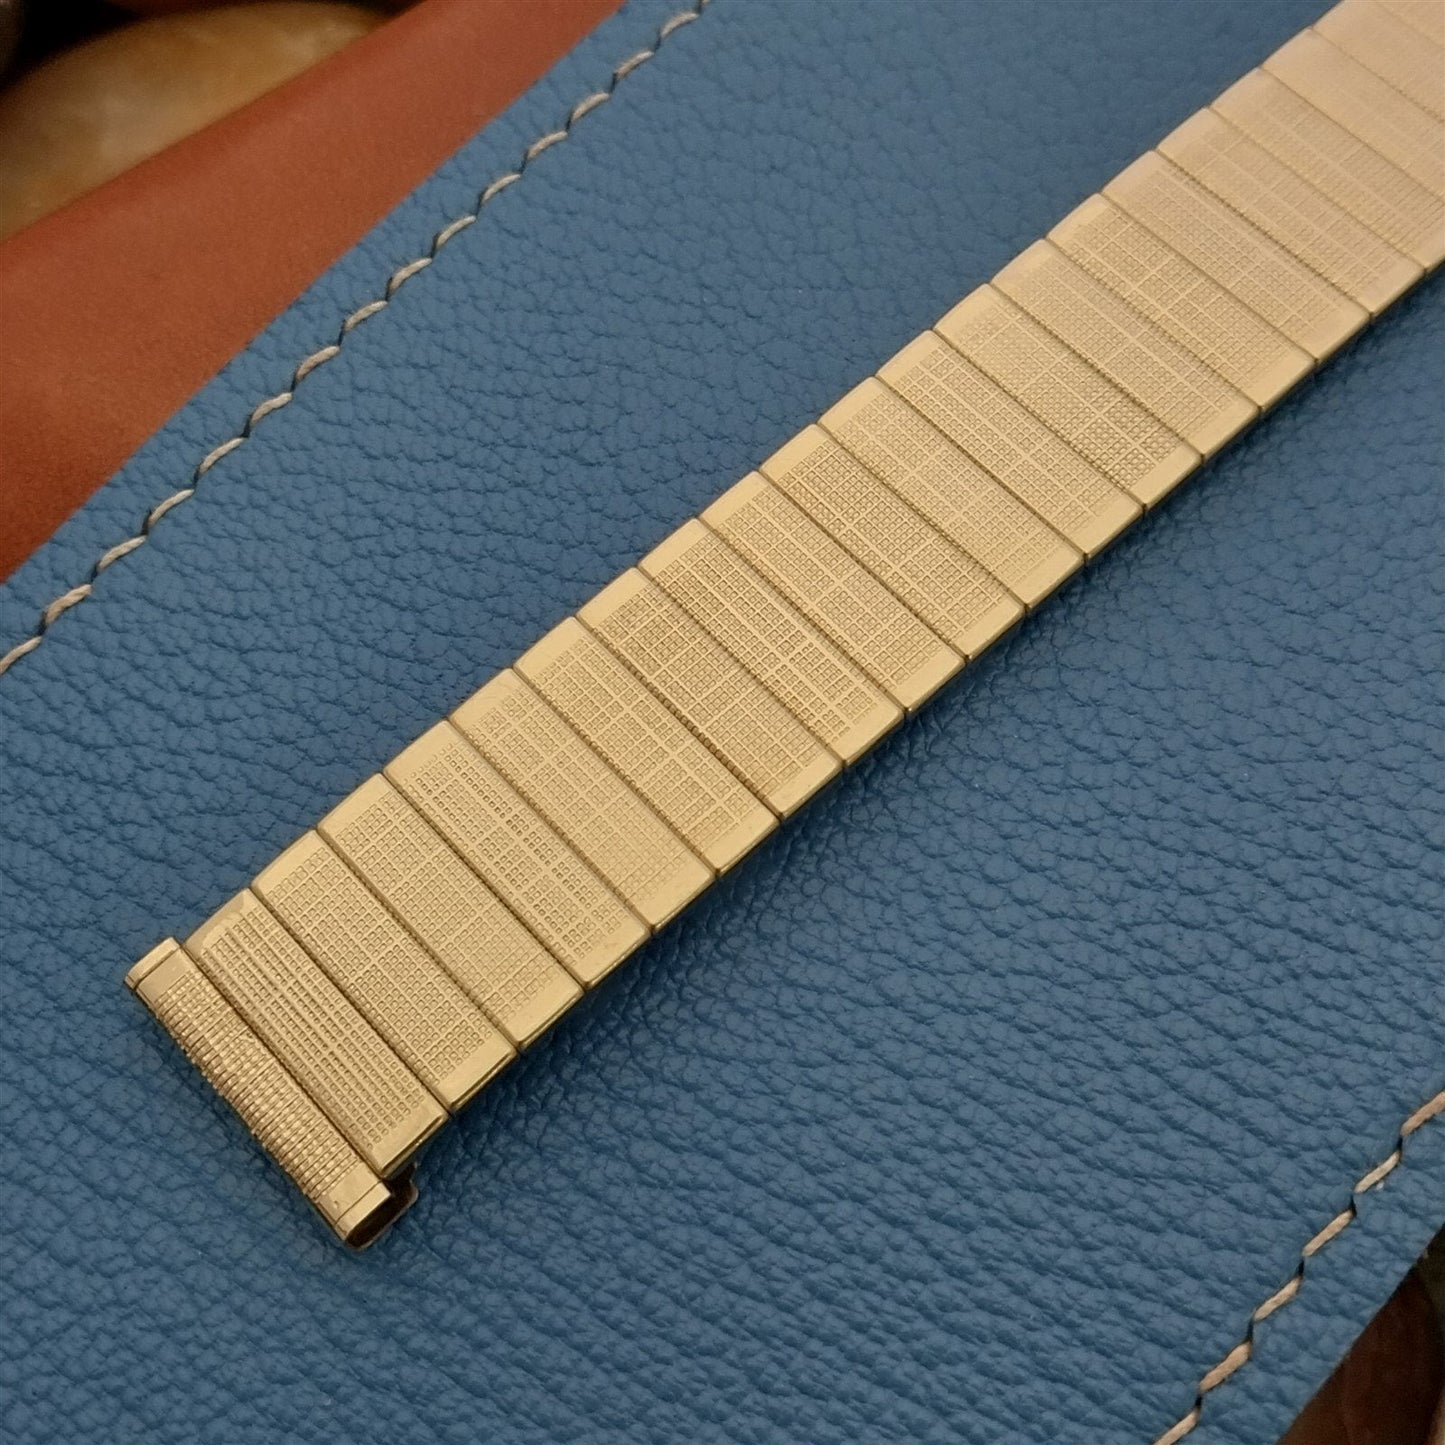 17.2mm 10k Gold-Filled Uniflex Slim Expansion 1960s Unused Vintage Watch Band